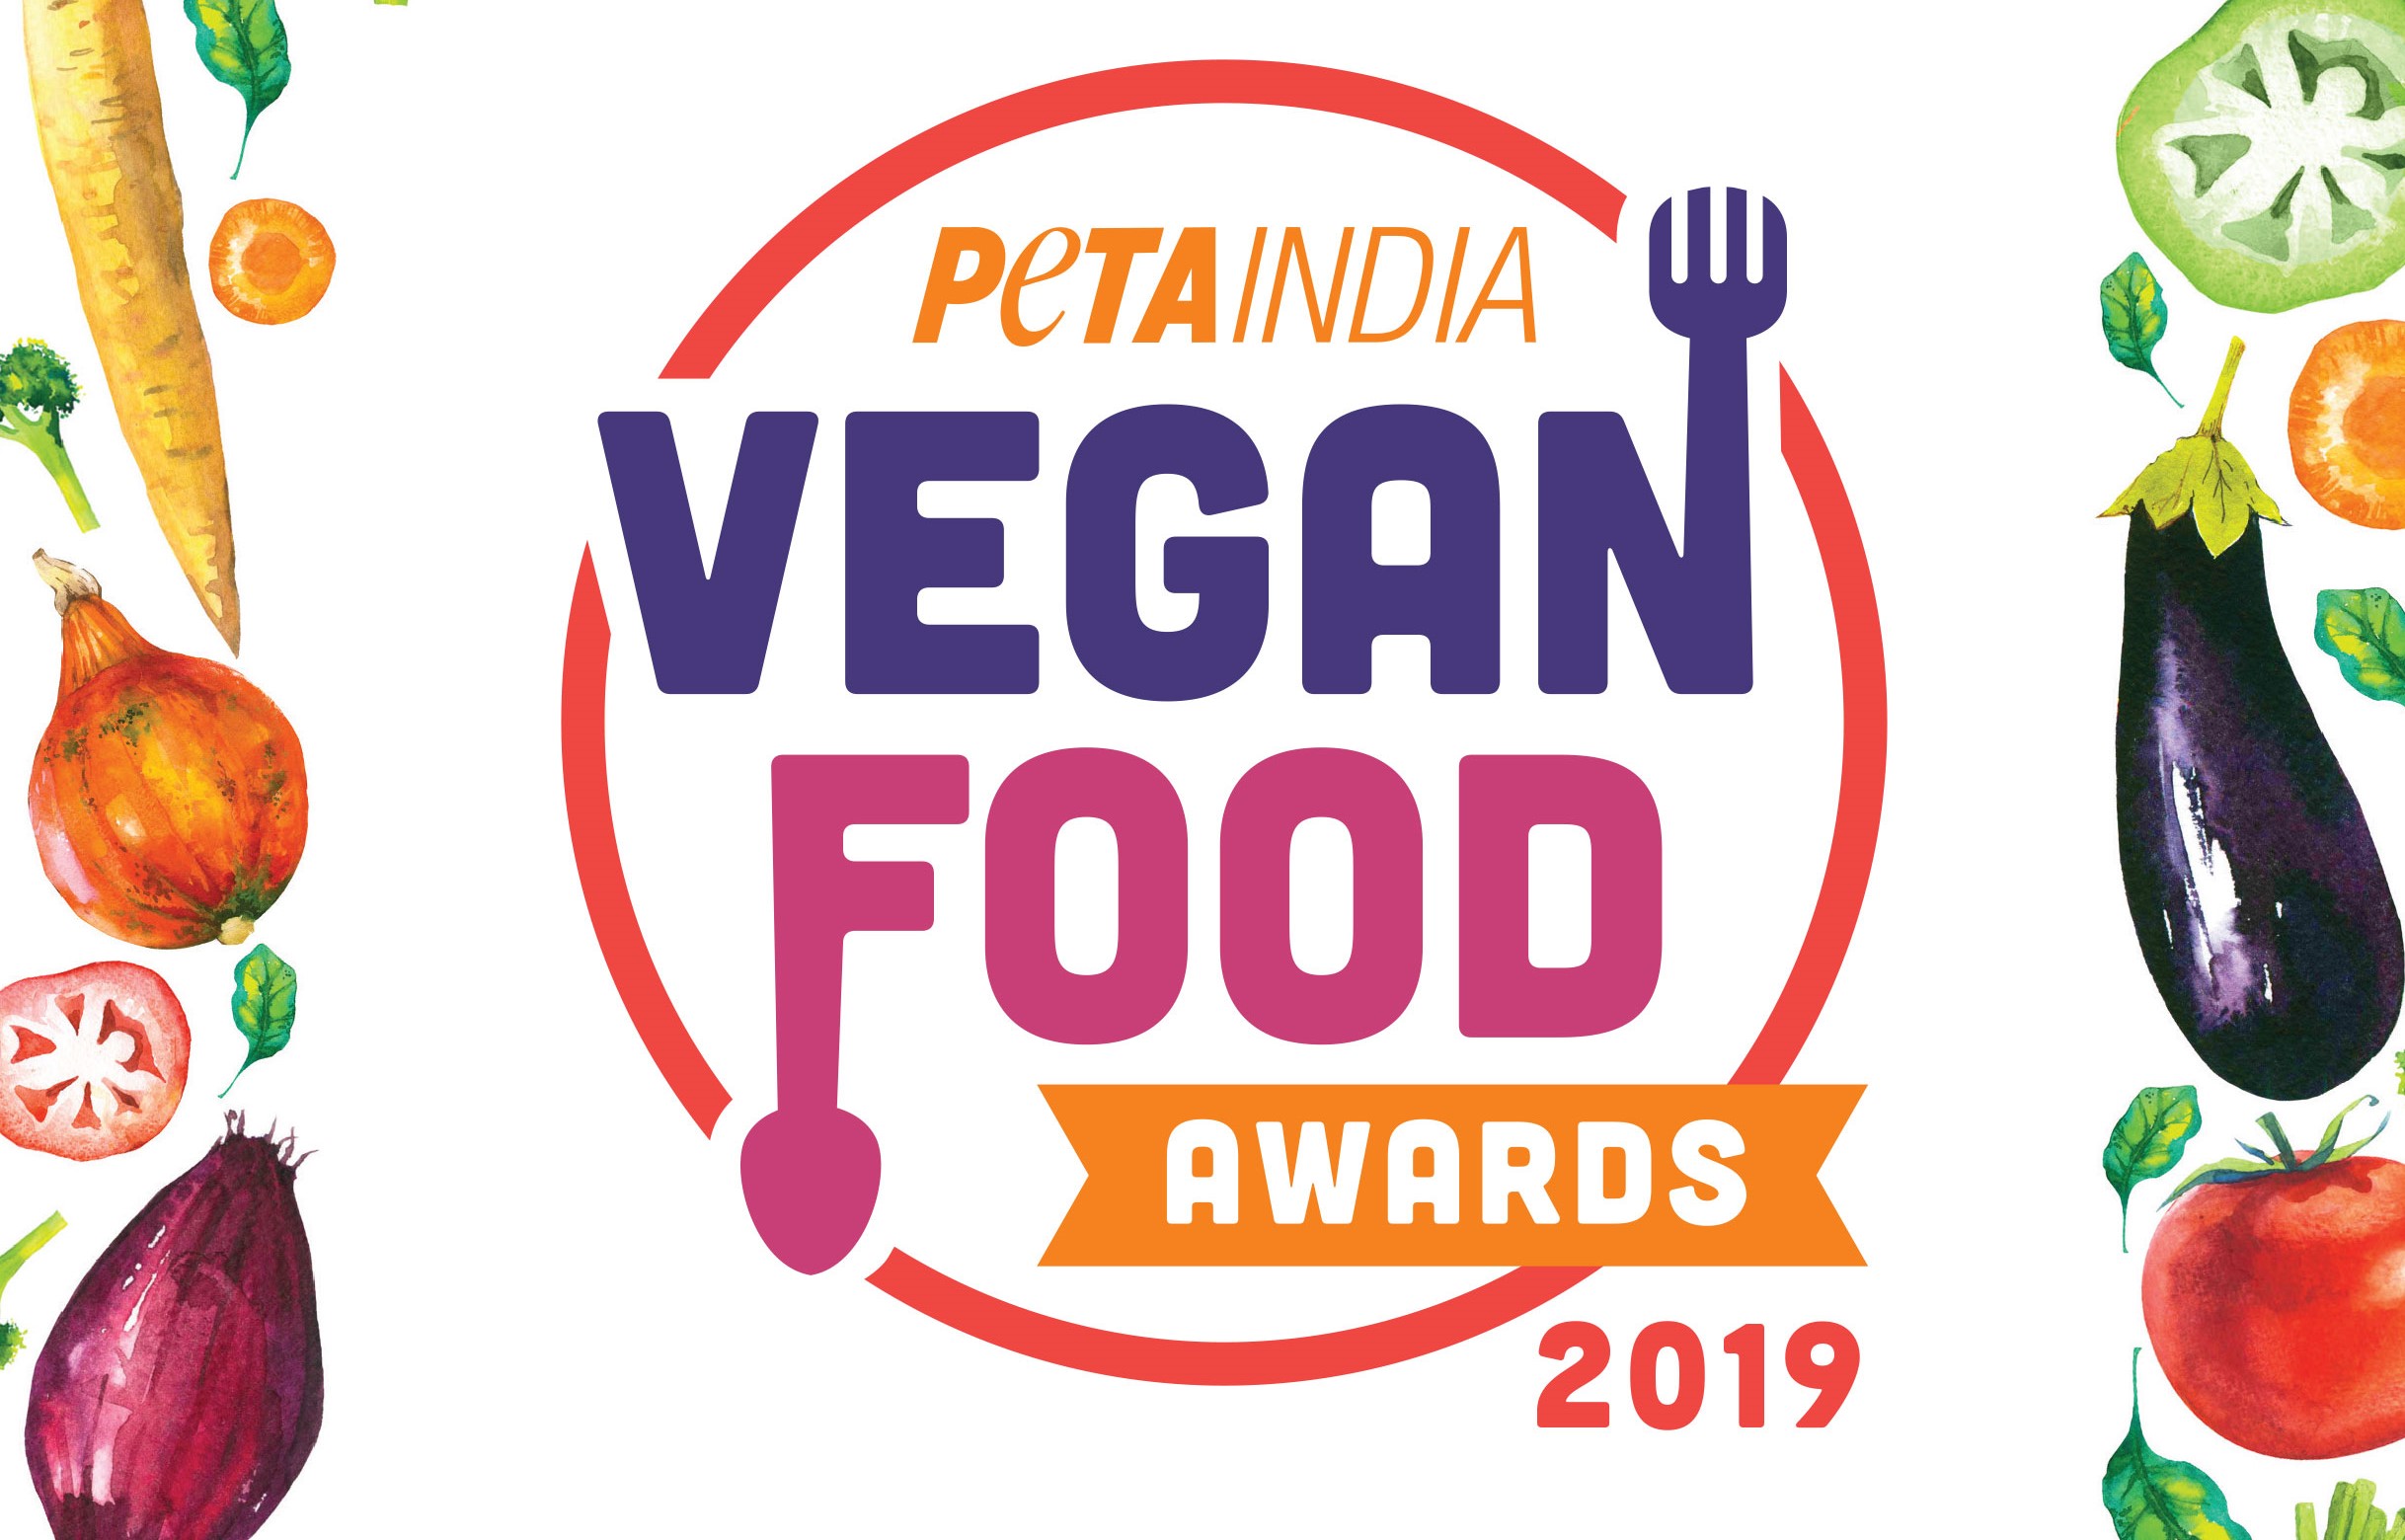 PETA इंडिया के 2019 के वीगन खाद्य पदार्थ पुरस्कार विजेताओं में Papacream एवं PizzaExpress का भी नाम